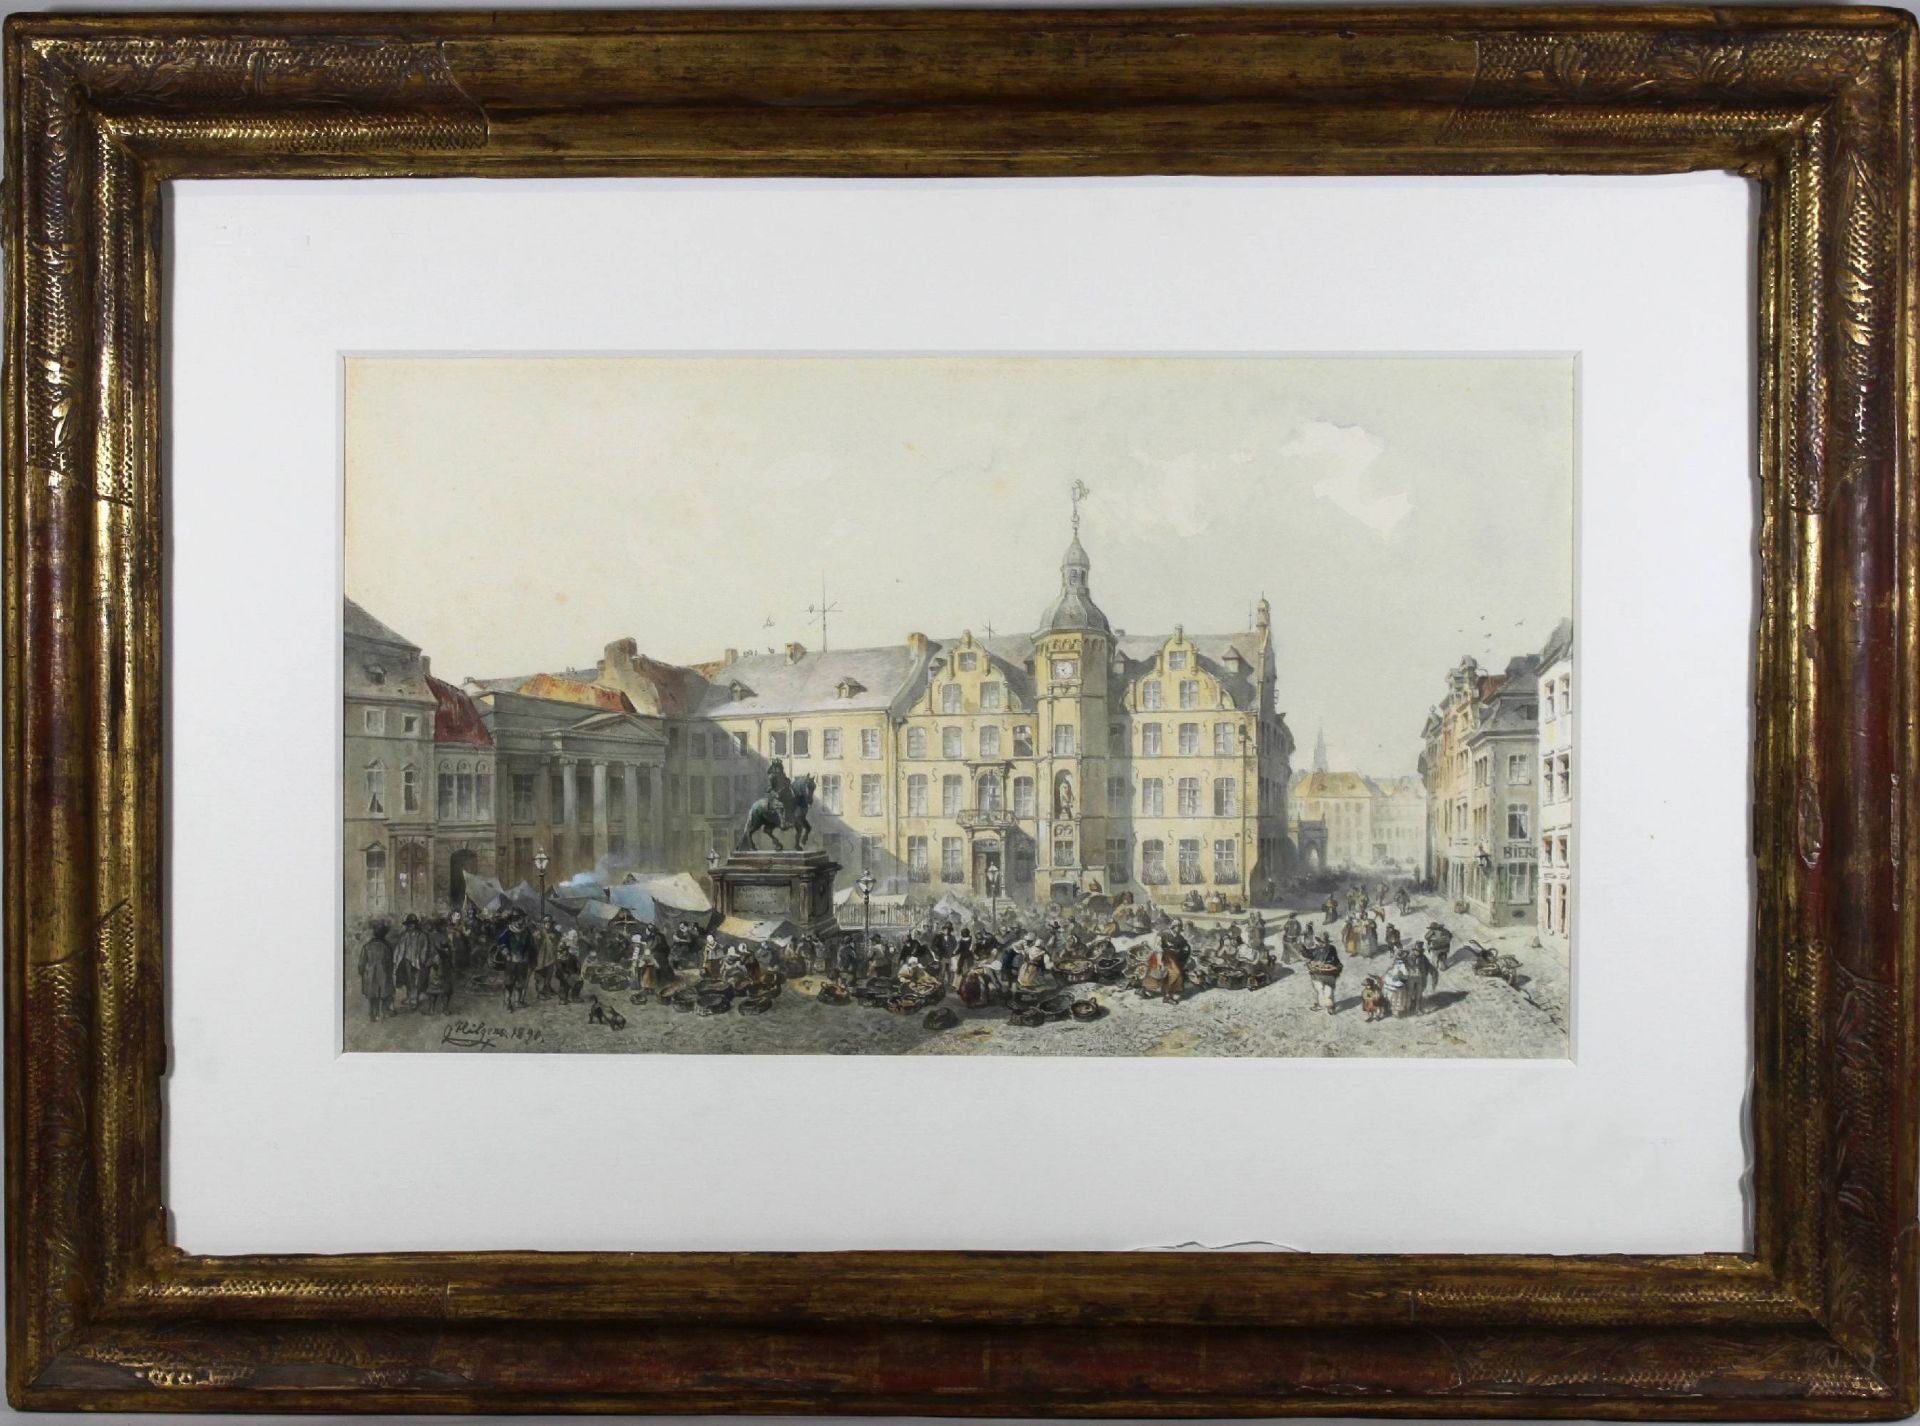 Düsseldorfer Künstler, verm. Karl Hilgers (1844 - 1925), Düsseldorfer Rathaus und Marktplatz, 18 - Image 2 of 3